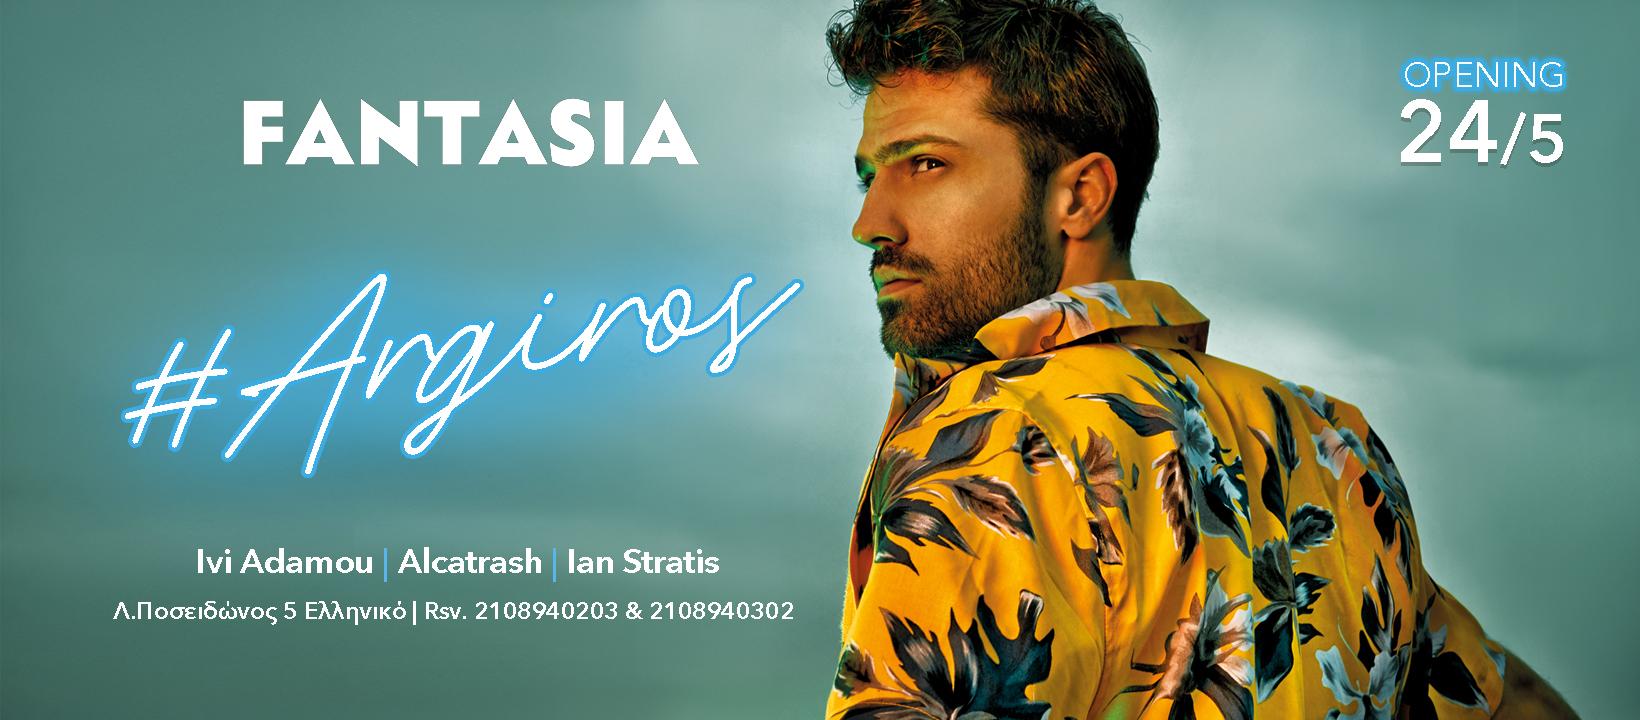 Μεγάλη πρεμιέρα για τον Κωνσταντίνο Αργυρό στις 25 Μαΐου στο Fantasia